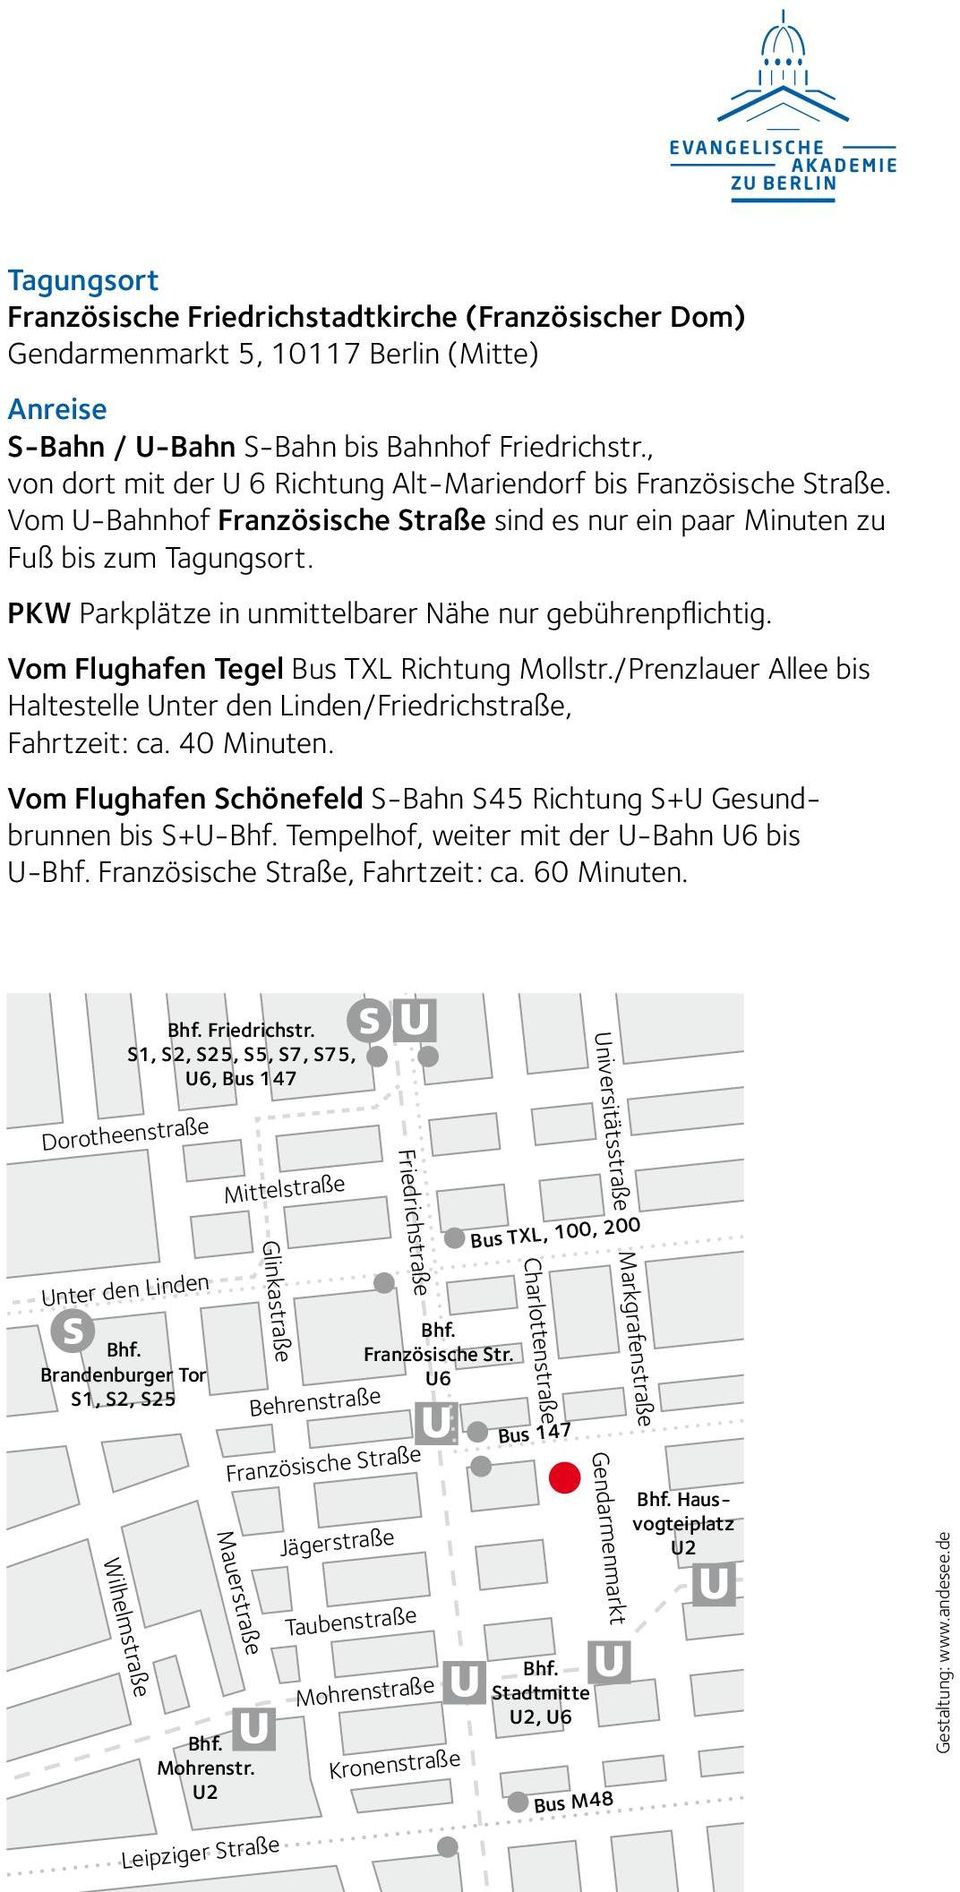 PKW Parkplätze in unmittelbarer Nähe nur gebührenpflichtig. Vom Flughafen Tegel Bus TXL Richtung Mollstr./Prenzlauer Allee bis Haltestelle Unter den Linden/Friedrichstraße, Fahrtzeit: ca. 40 Minuten.